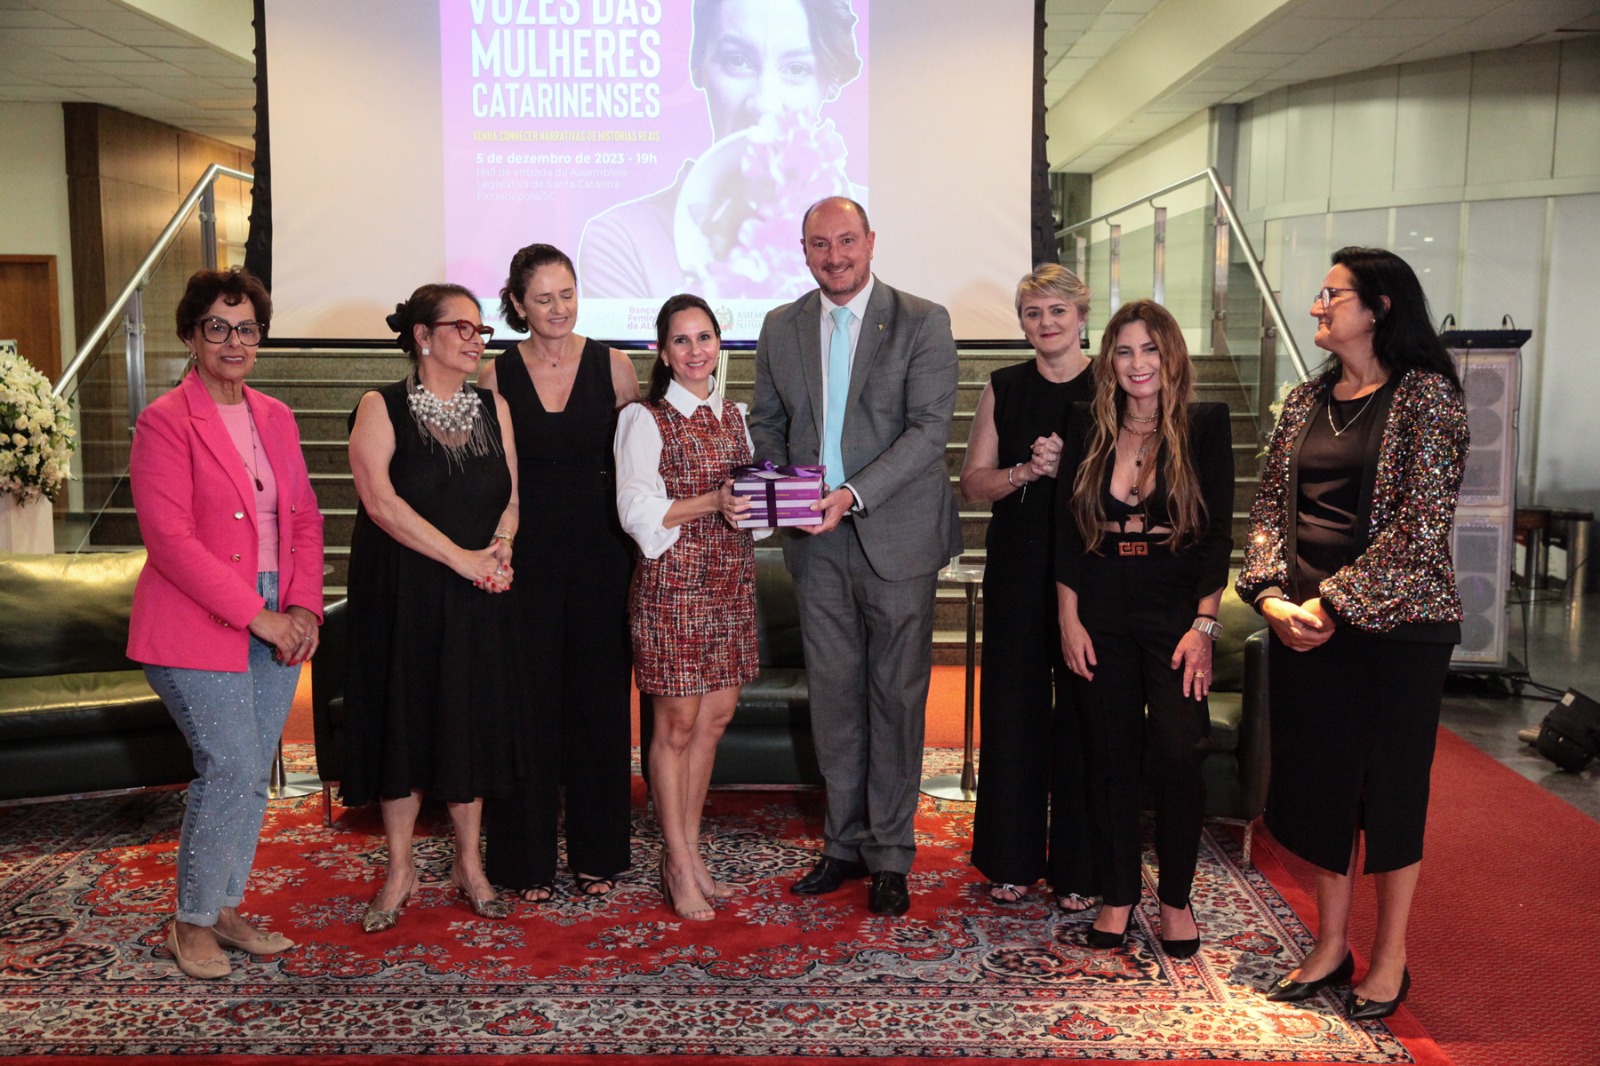 Vozes das Mulheres Catarinenses”: lançamento do livro é um marco para a força feminina em SC